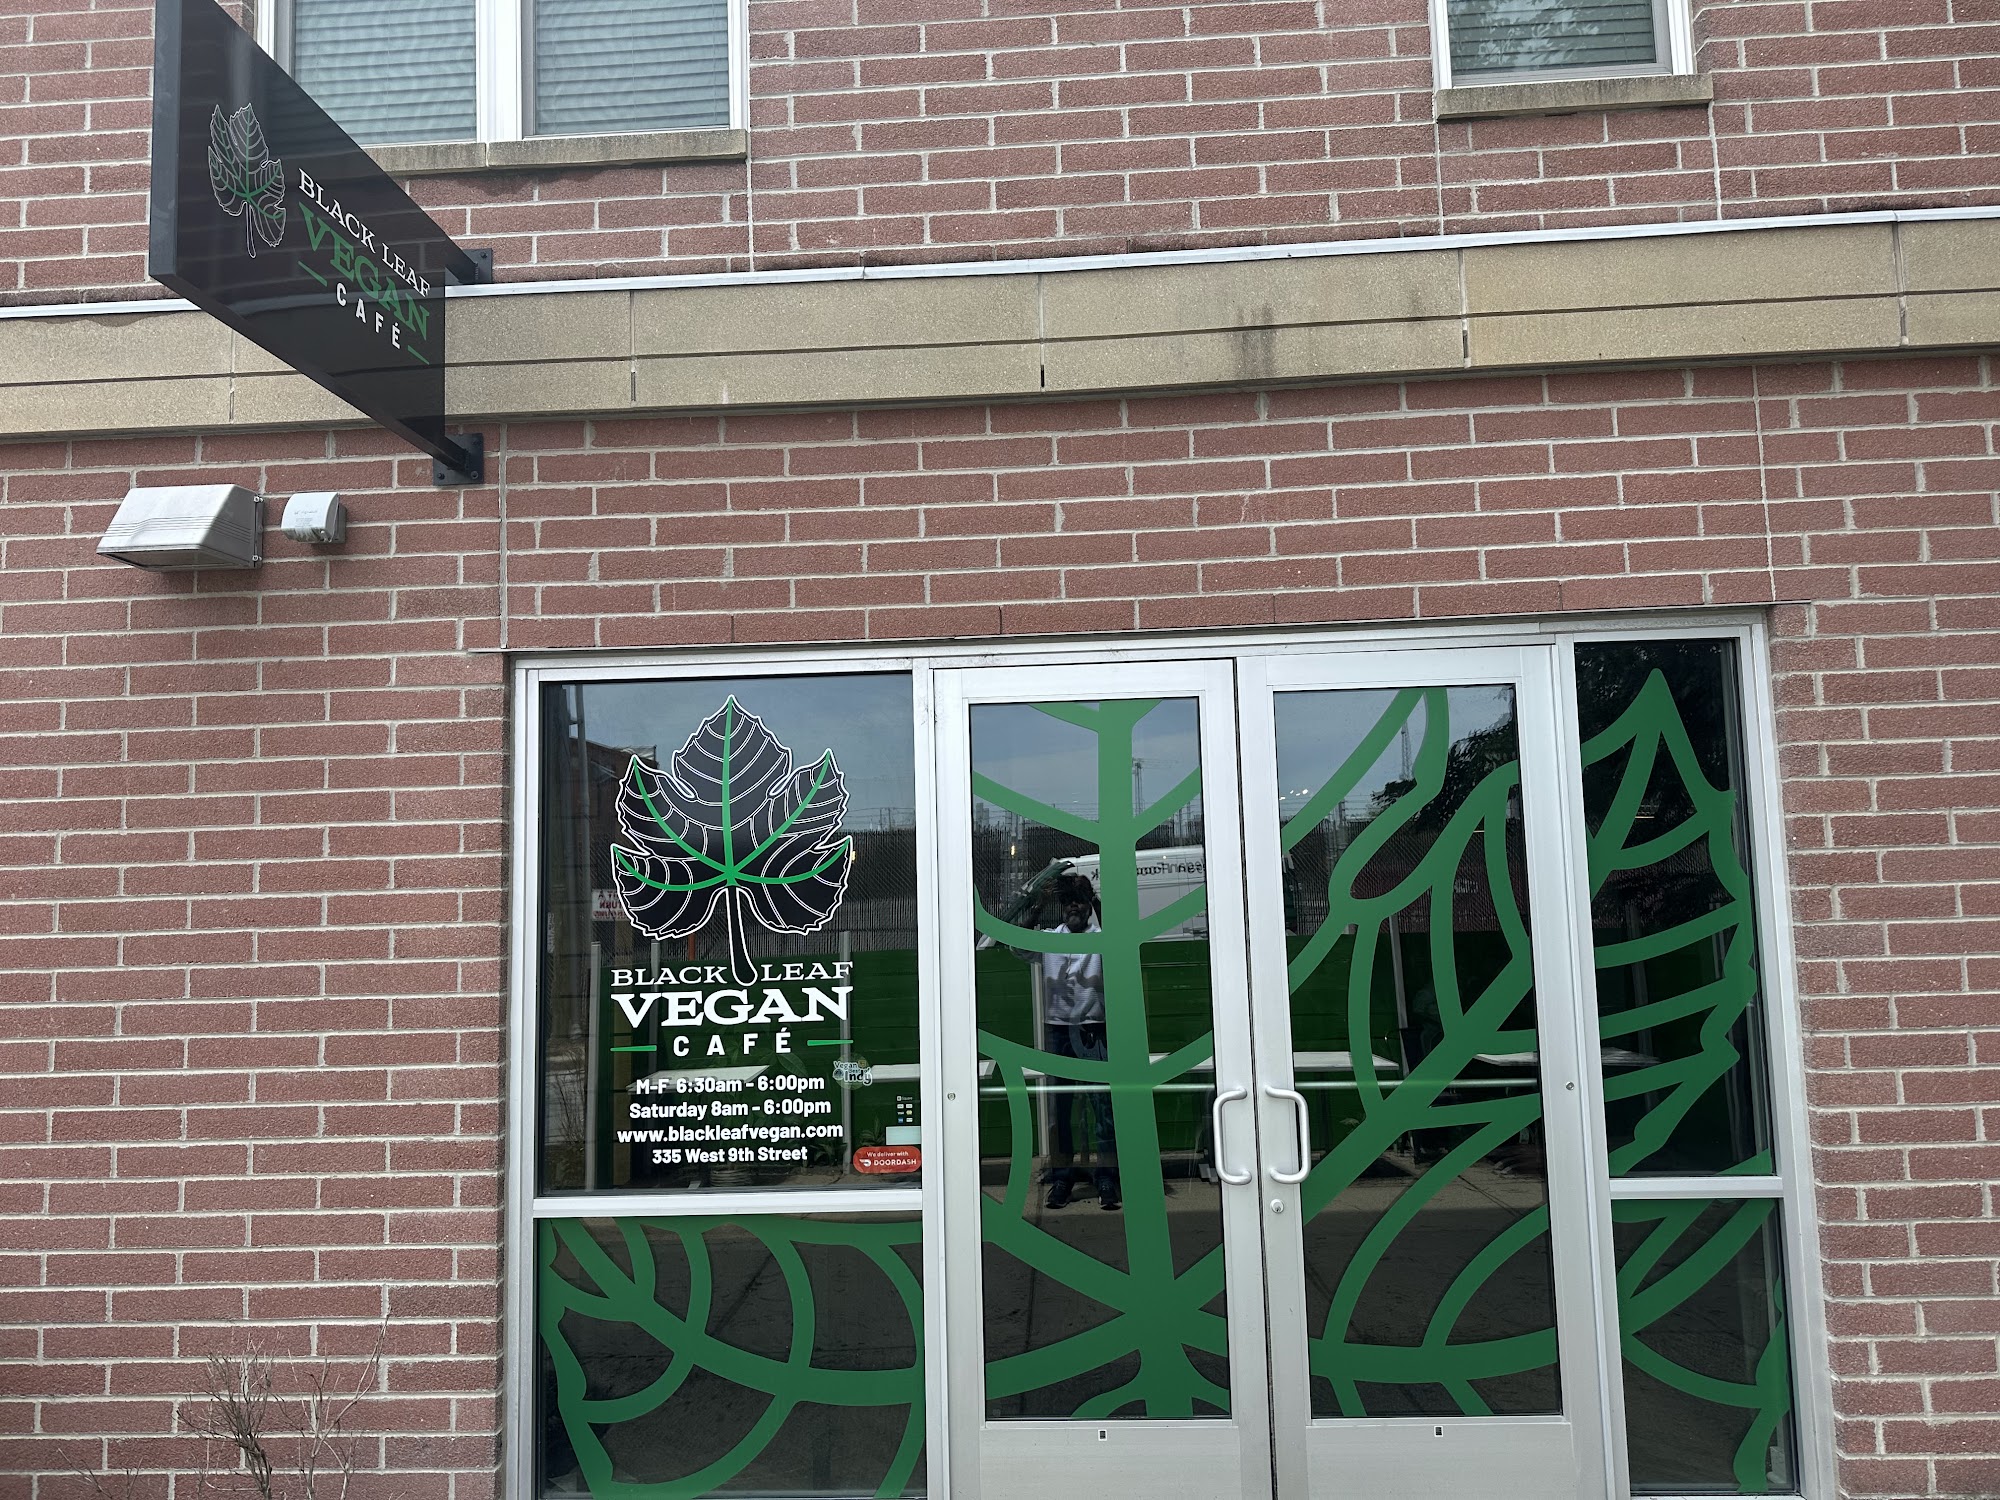 Black Leaf Vegan Cafe